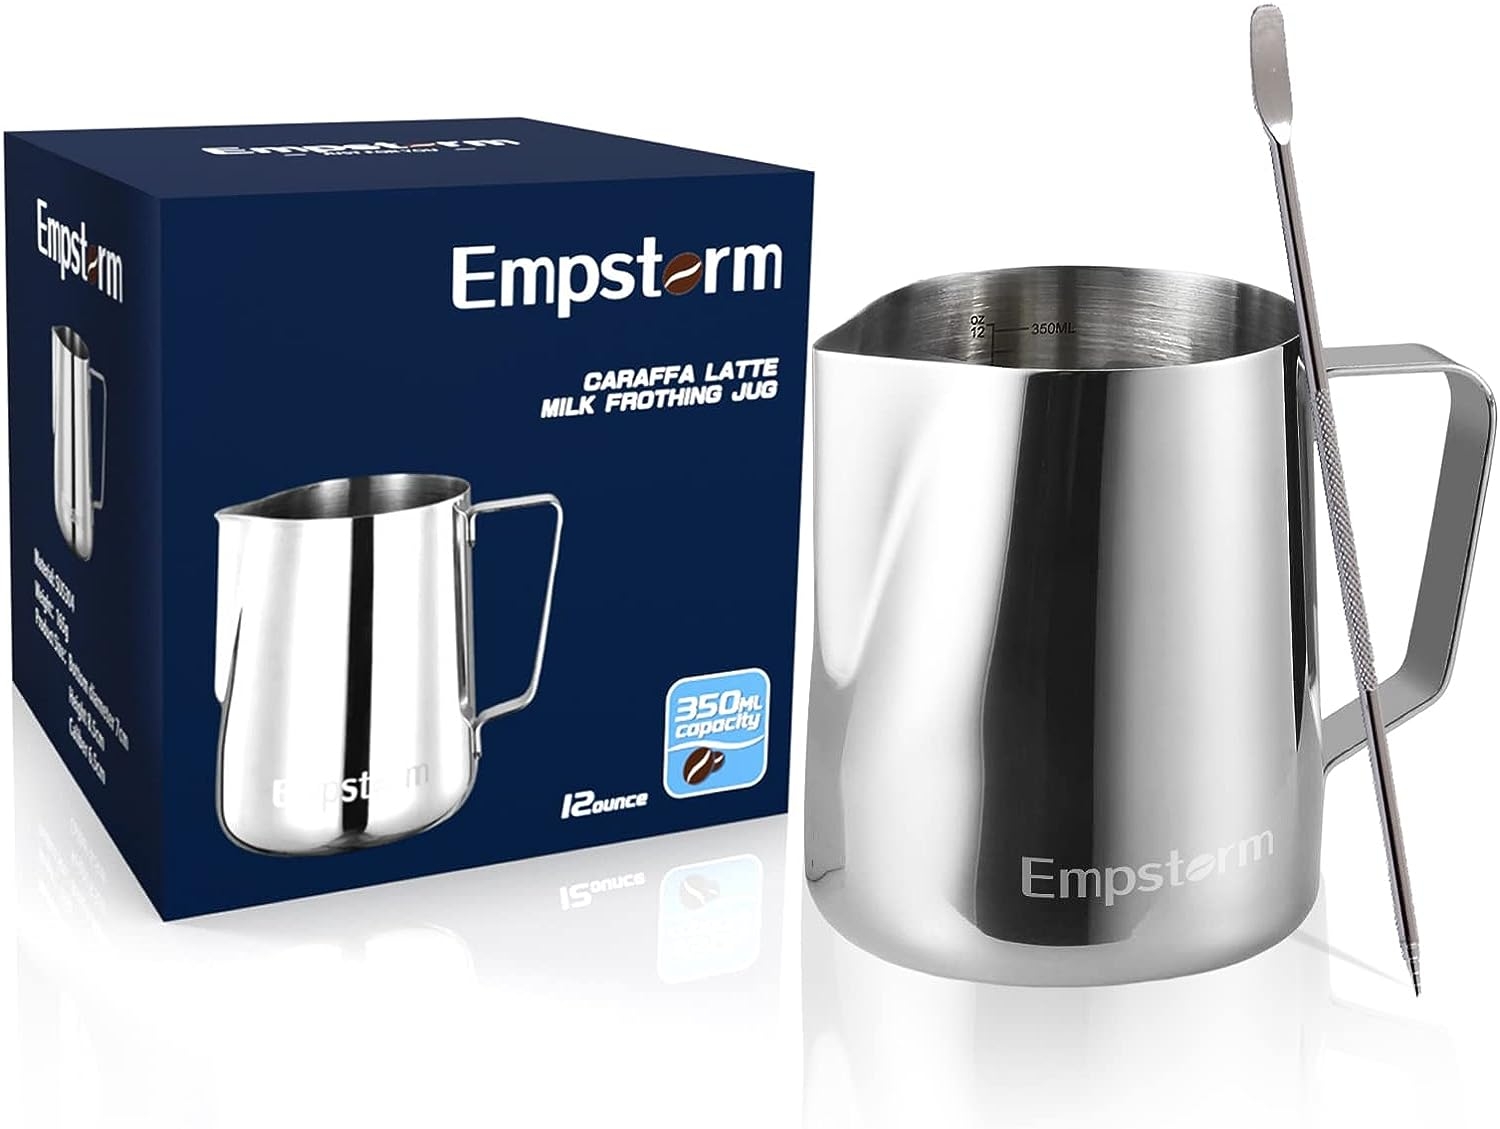  Empstorm Espresso Machine 20 Bar,Espresso Coffee Maker